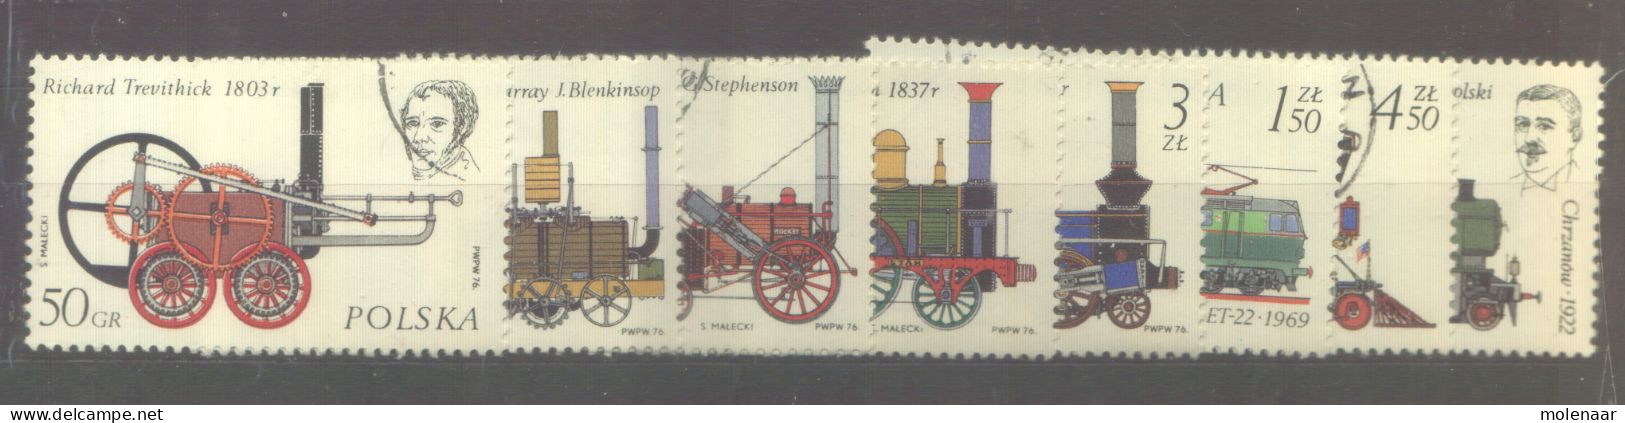 Postzegels > Europa > Polen > 1944-.... Republiek > 1971-80 > Gebruikt No. 2424-2431 (24129) - Usados